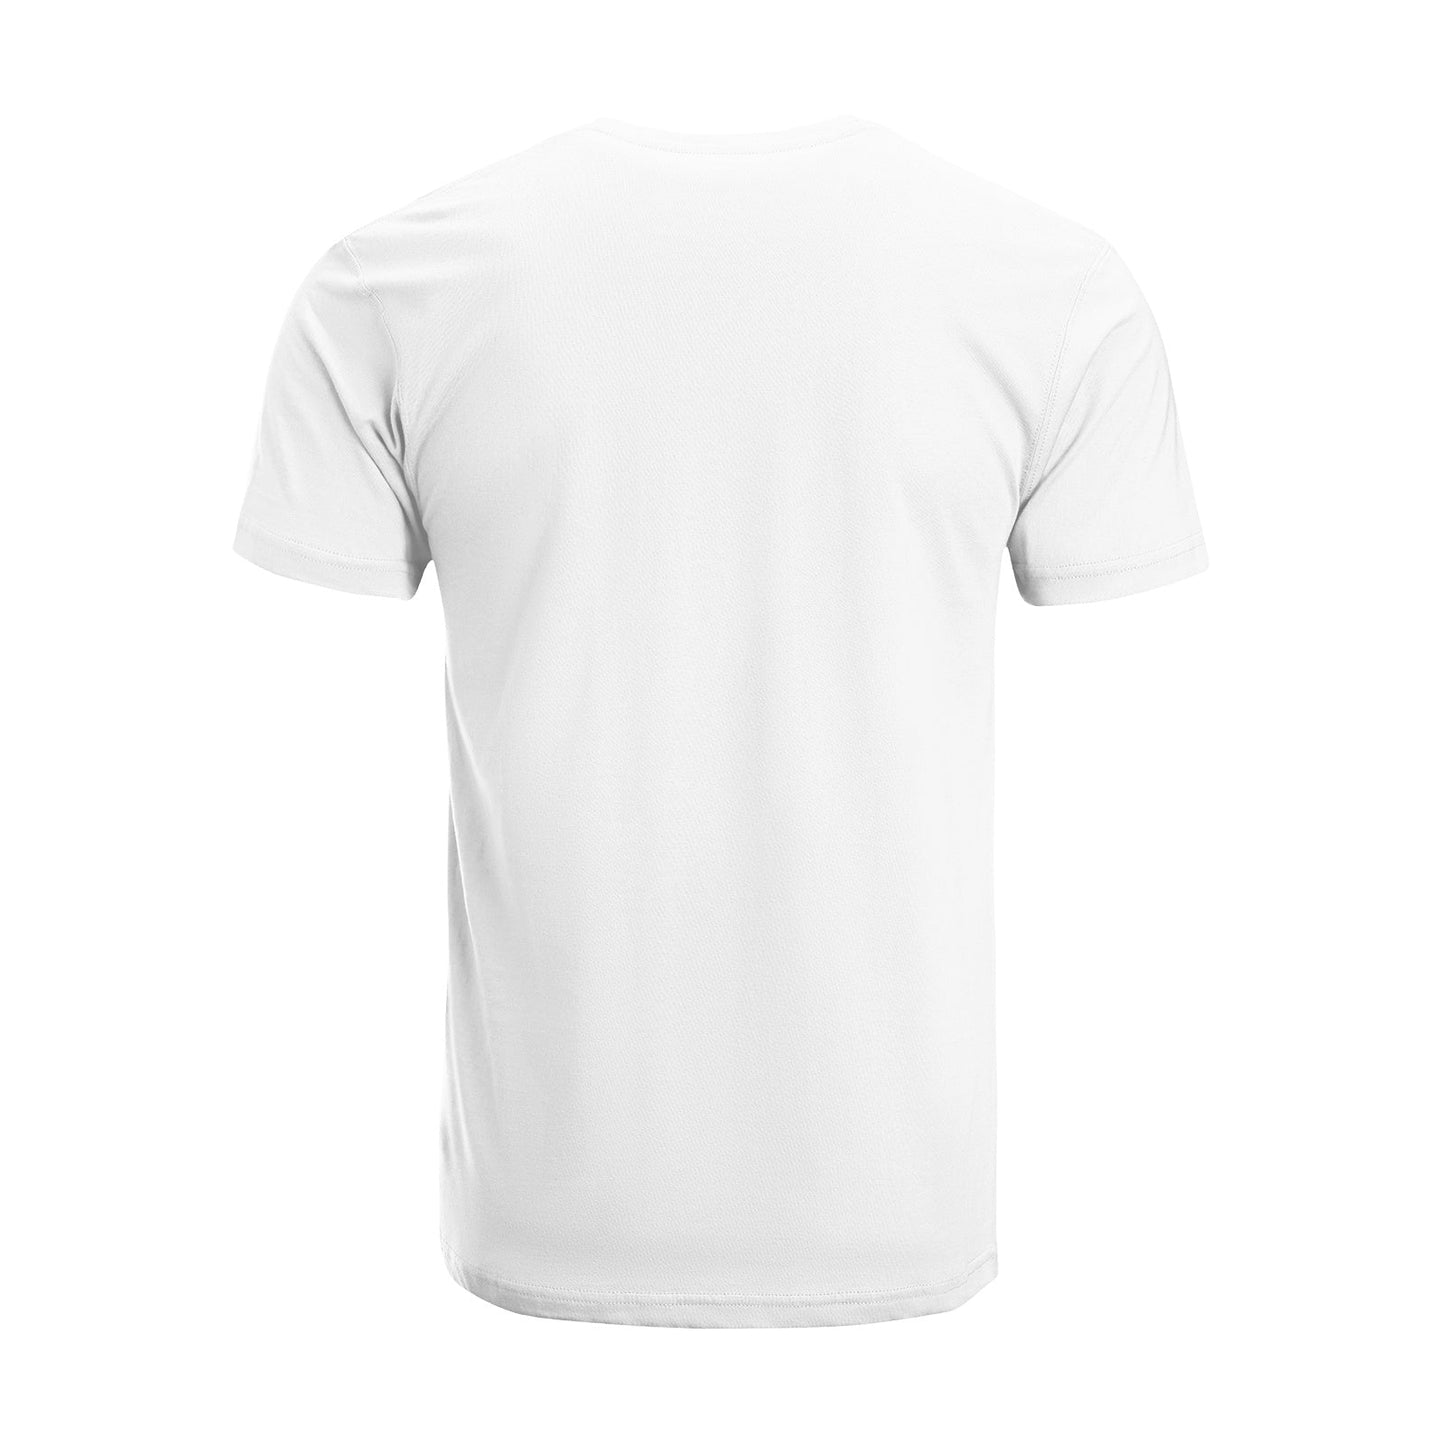 Unisex Short Sleeve Crew Neck Cotton Jersey T-Shirt TRUCK 29